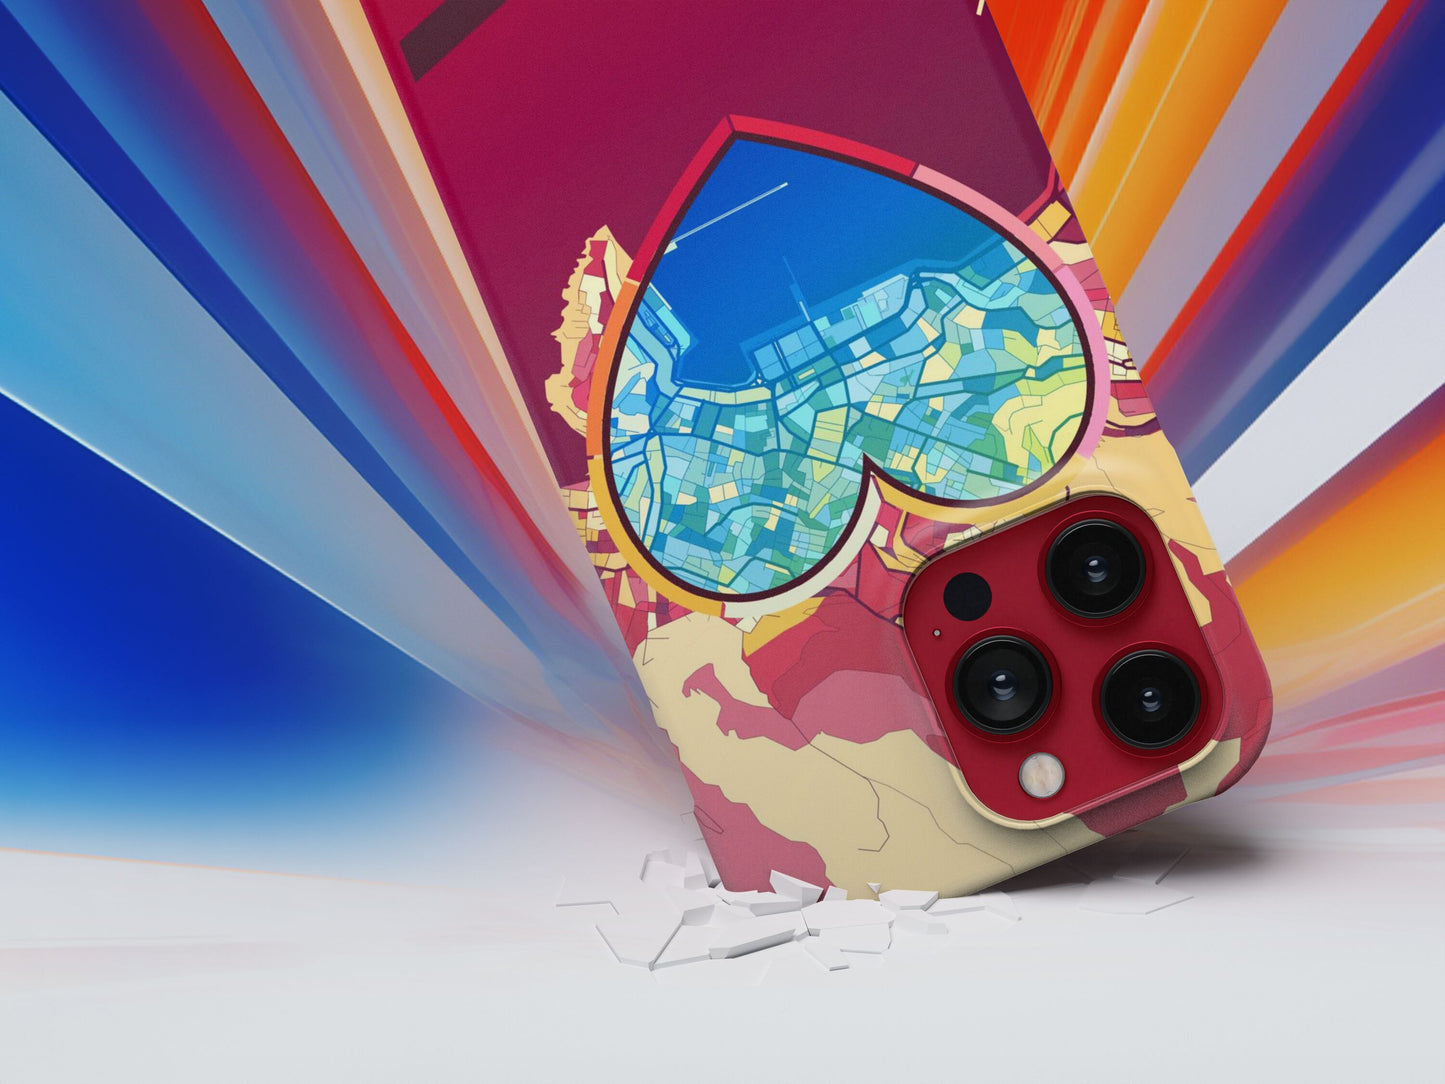 Καβαλα Ελλαδα slim phone case with colorful icon